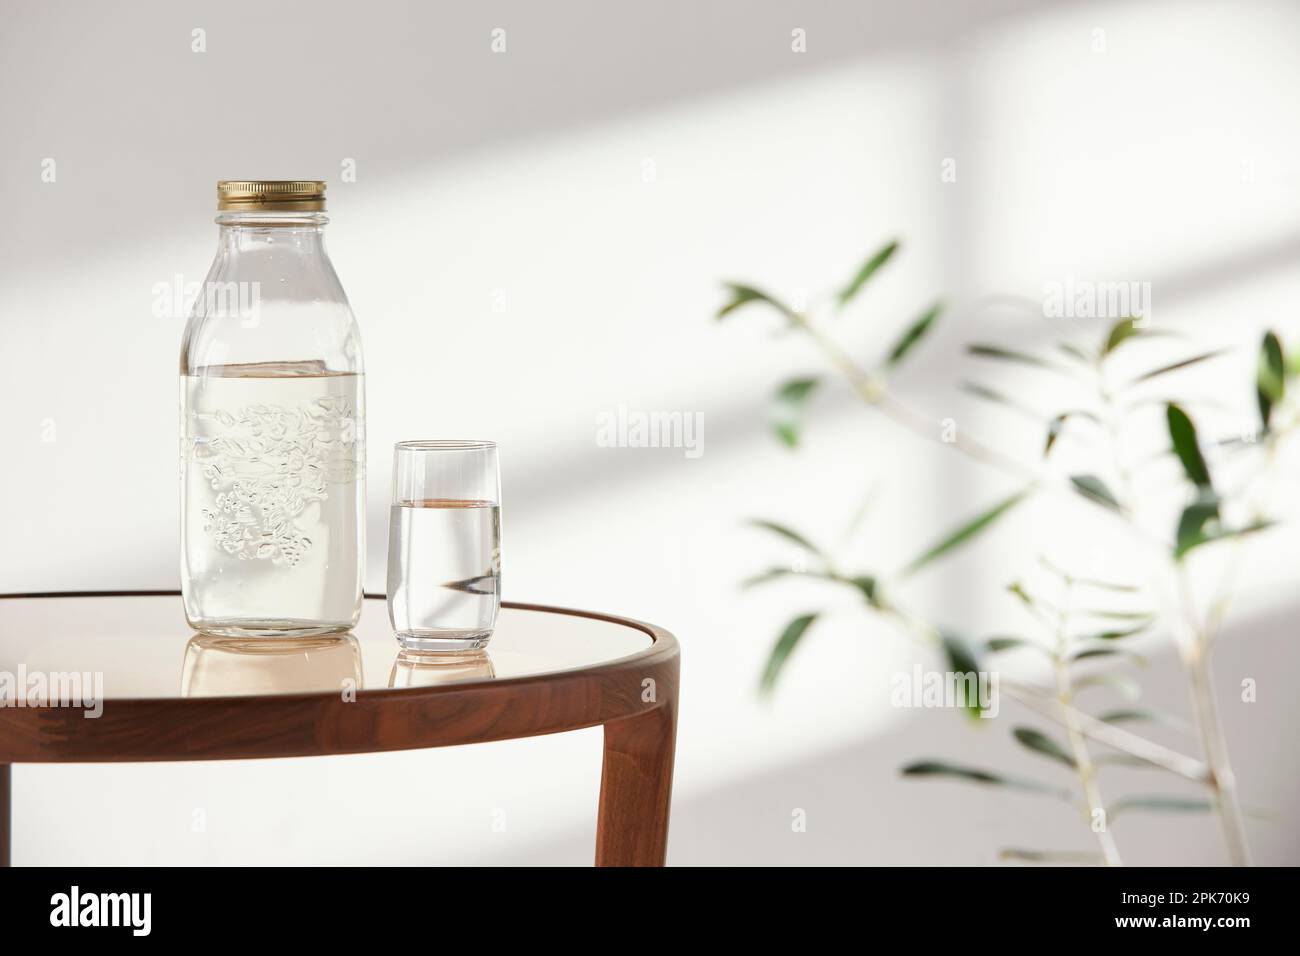 Questa camera offre un'atmosfera tranquilla con luce naturale. Ci sono vasi di argilla, bottiglie di vetro, caffè e vari oggetti sul tavolo. Foto Stock